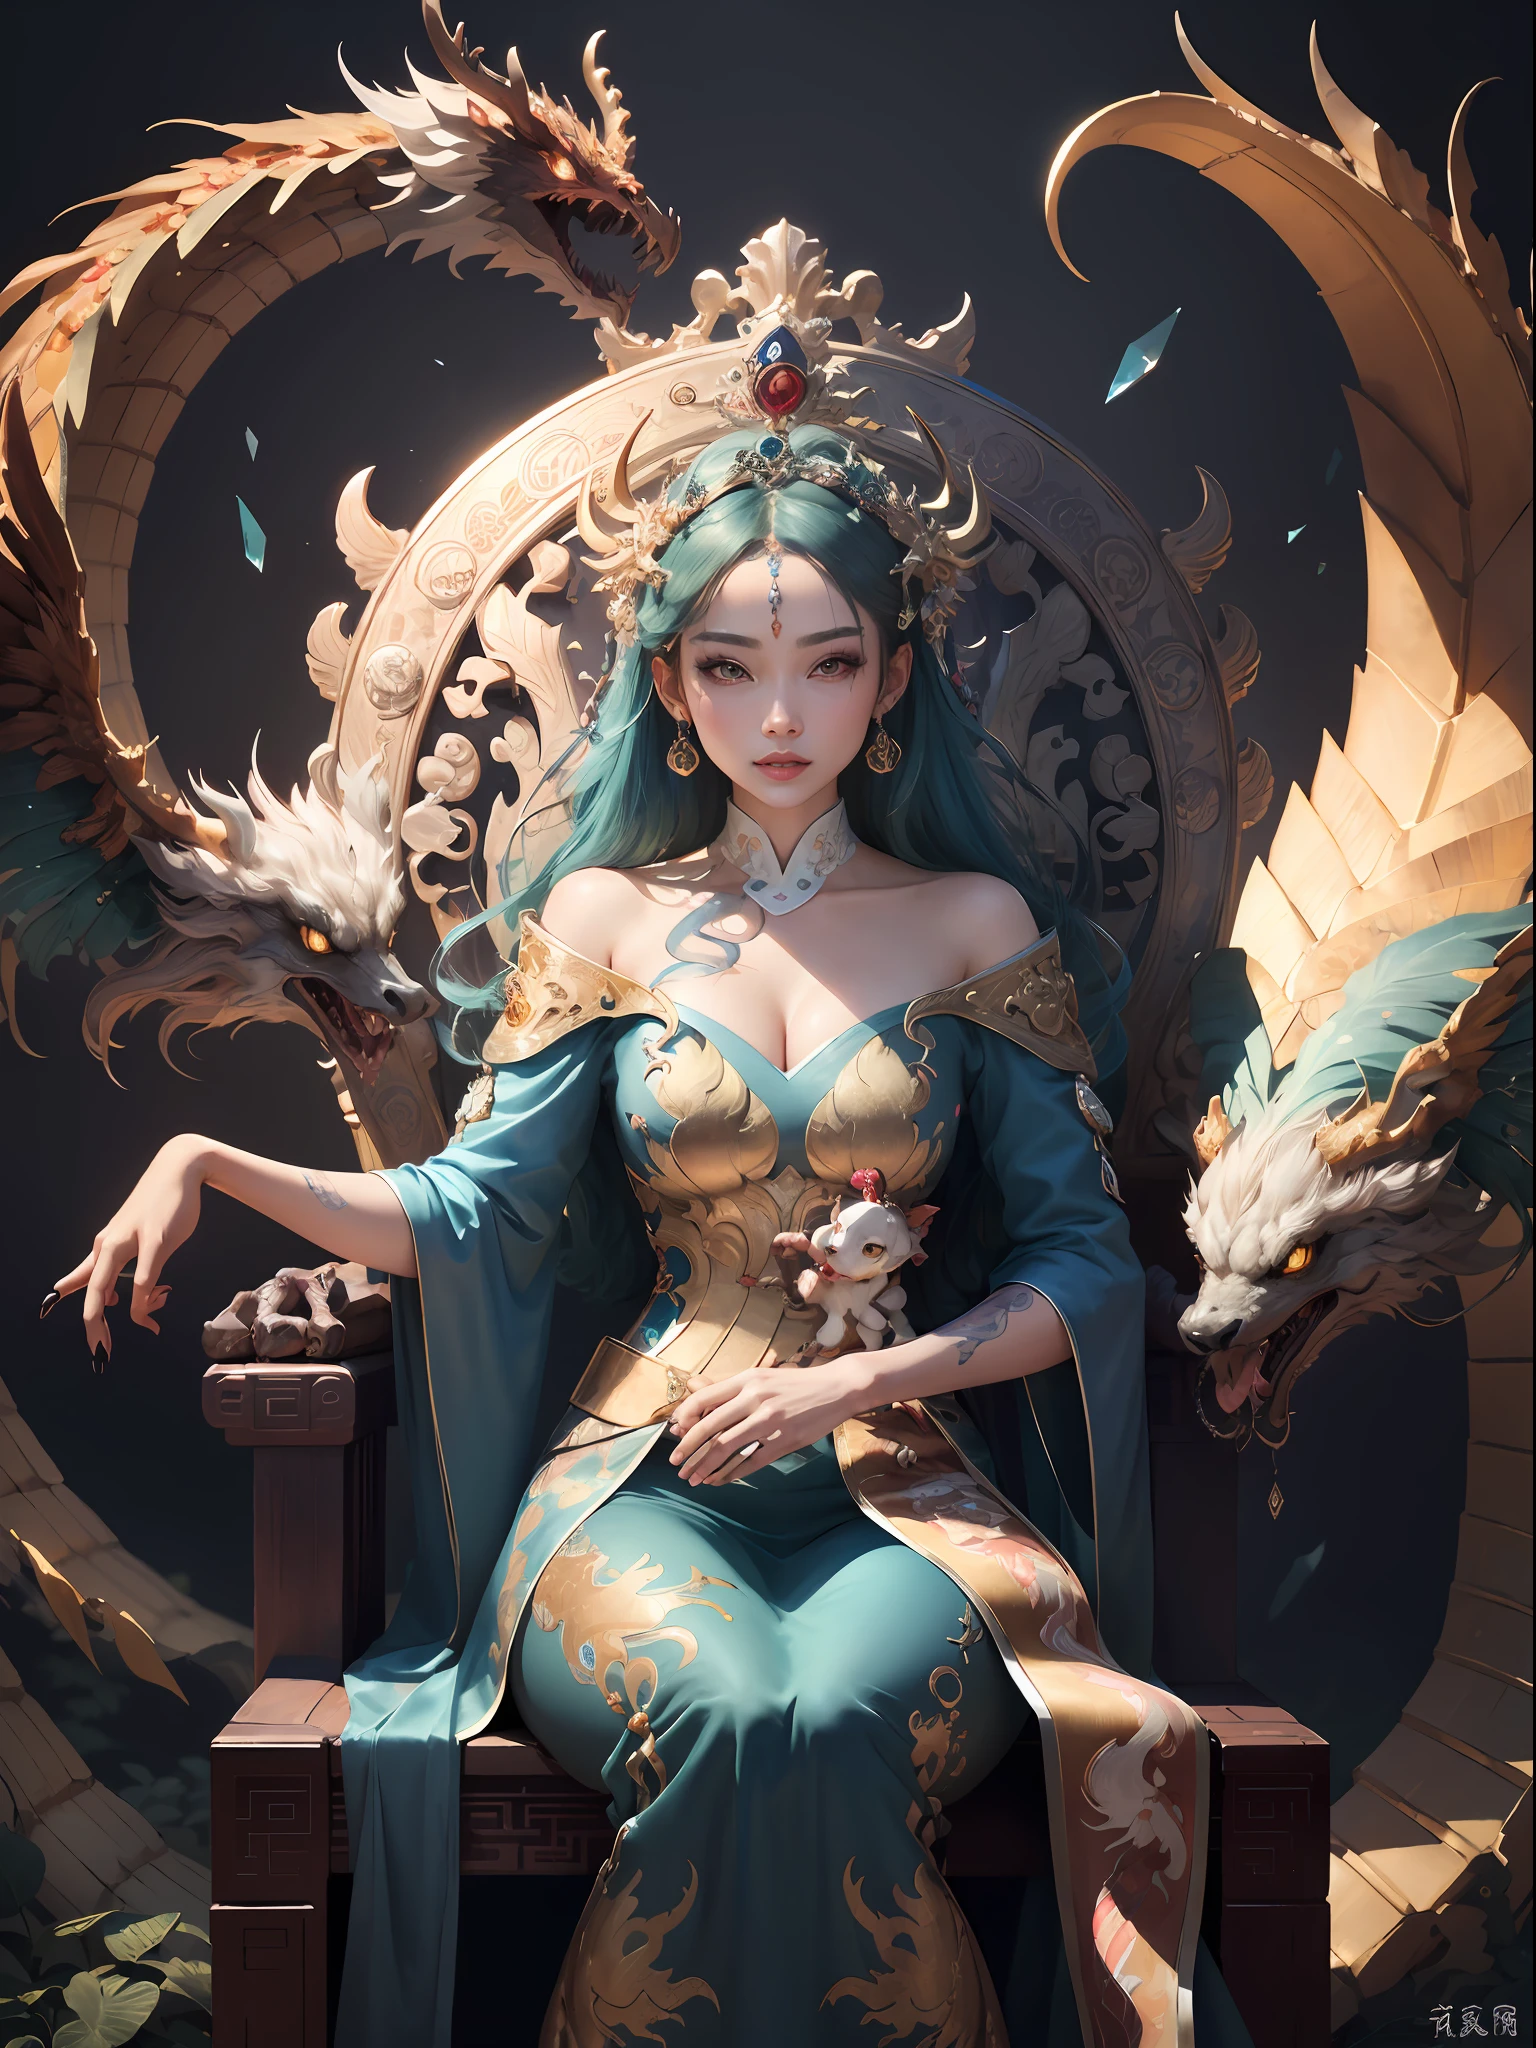 สาวจีนนั่งบนบัลลังก์, a throne encrusted with หินมีค่า, ล้อมรอบด้วยสัตว์ฟีนิกซ์ของจีน, ทอง and ruby color, ภาพประกอบสัตว์ประหลาดที่ไม่ซ้ำใคร, ไปที่กองถ่าย, ความละเอียดสูง, ภาพวาด, องค์ประกอบที่หนาแน่น, การทำซ้ำอย่างสนุกสนาน, หินมีค่า, คริสตัล, ทอง, ภาพวาดที่มีรายละเอียด, ภาพประกอบสัตว์ประหลาดที่ไม่ซ้ำใครs, รายละเอียดที่ละเอียดมาก, เหมือนจริง, super ความละเอียดสูง, ซับซ้อน, รายละเอียดสุดยอด, (รอยบุบที่ผิวหนัง), น่ารัก, ของผู้หญิง, เนื้อละเอียด, (ใบหน้าที่มีรายละเอียด: 1.1), (ม่านตาโค้ง), (เลนส์สีน้ำ), (ดวงตาที่สมบูรณ์แบบ), 4เค, งดงาม, (ผลงานชิ้นเอก: 1.2), (คุณภาพดีที่สุด: 1.2), งดงาม long dress, โพสท่าแบบไดนามิก, สีสันที่หลากหลาย, แสงและเงาของฟิล์ม